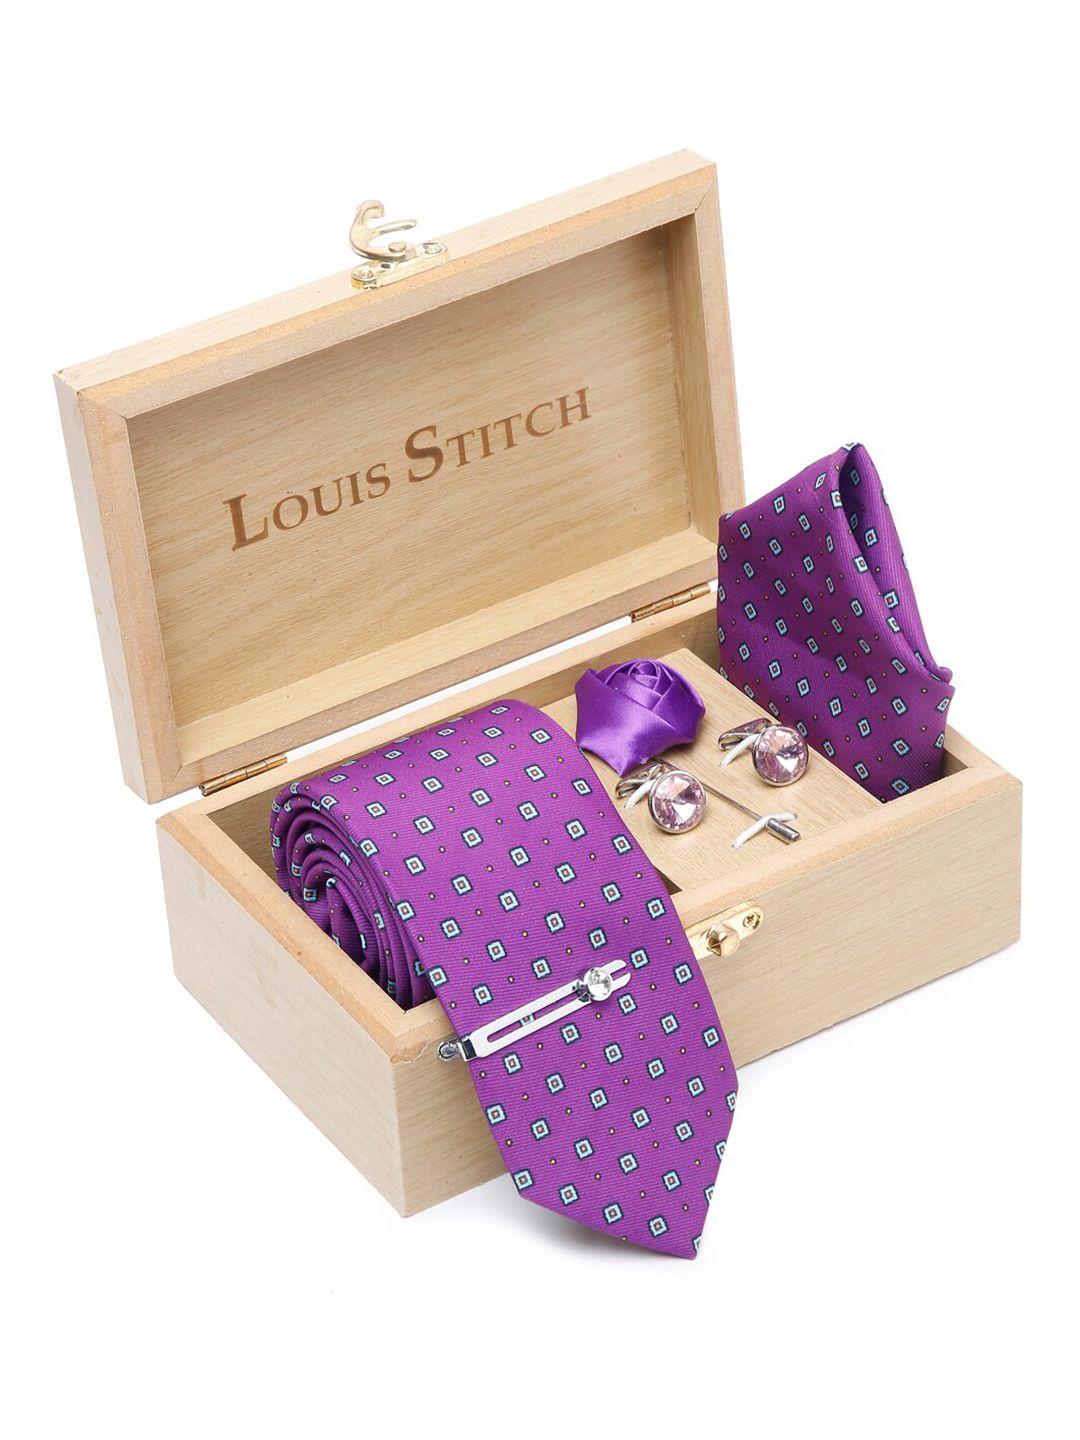 louis stitch men printed silk necktie accessory gift set